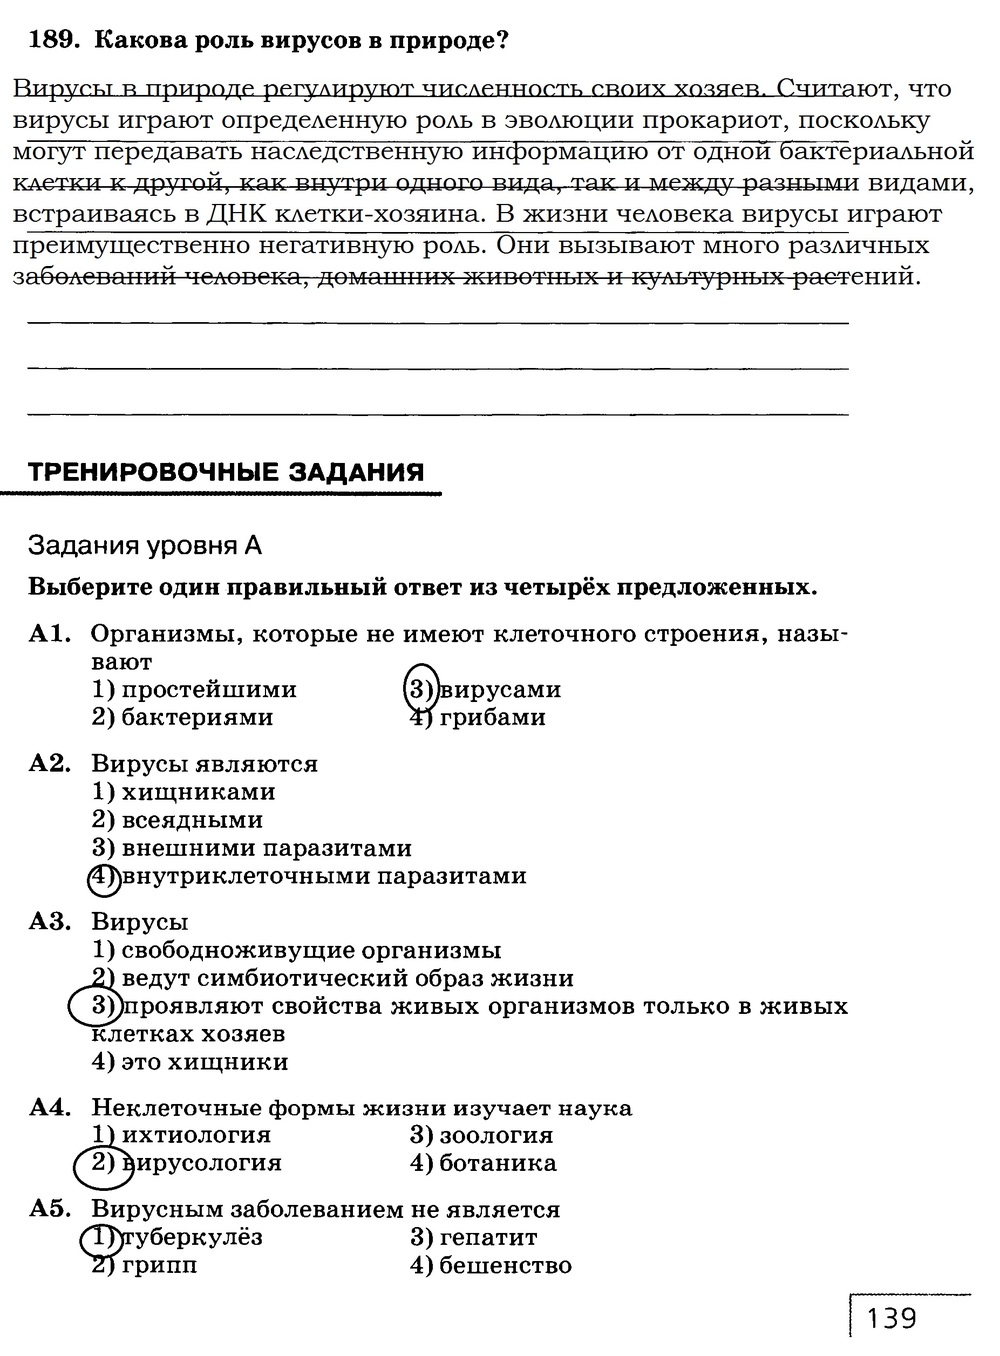 Рабочая тетрадь, 7 класс, Захаров В.Б., Сонин Н.И., 2015, задание: стр. 139